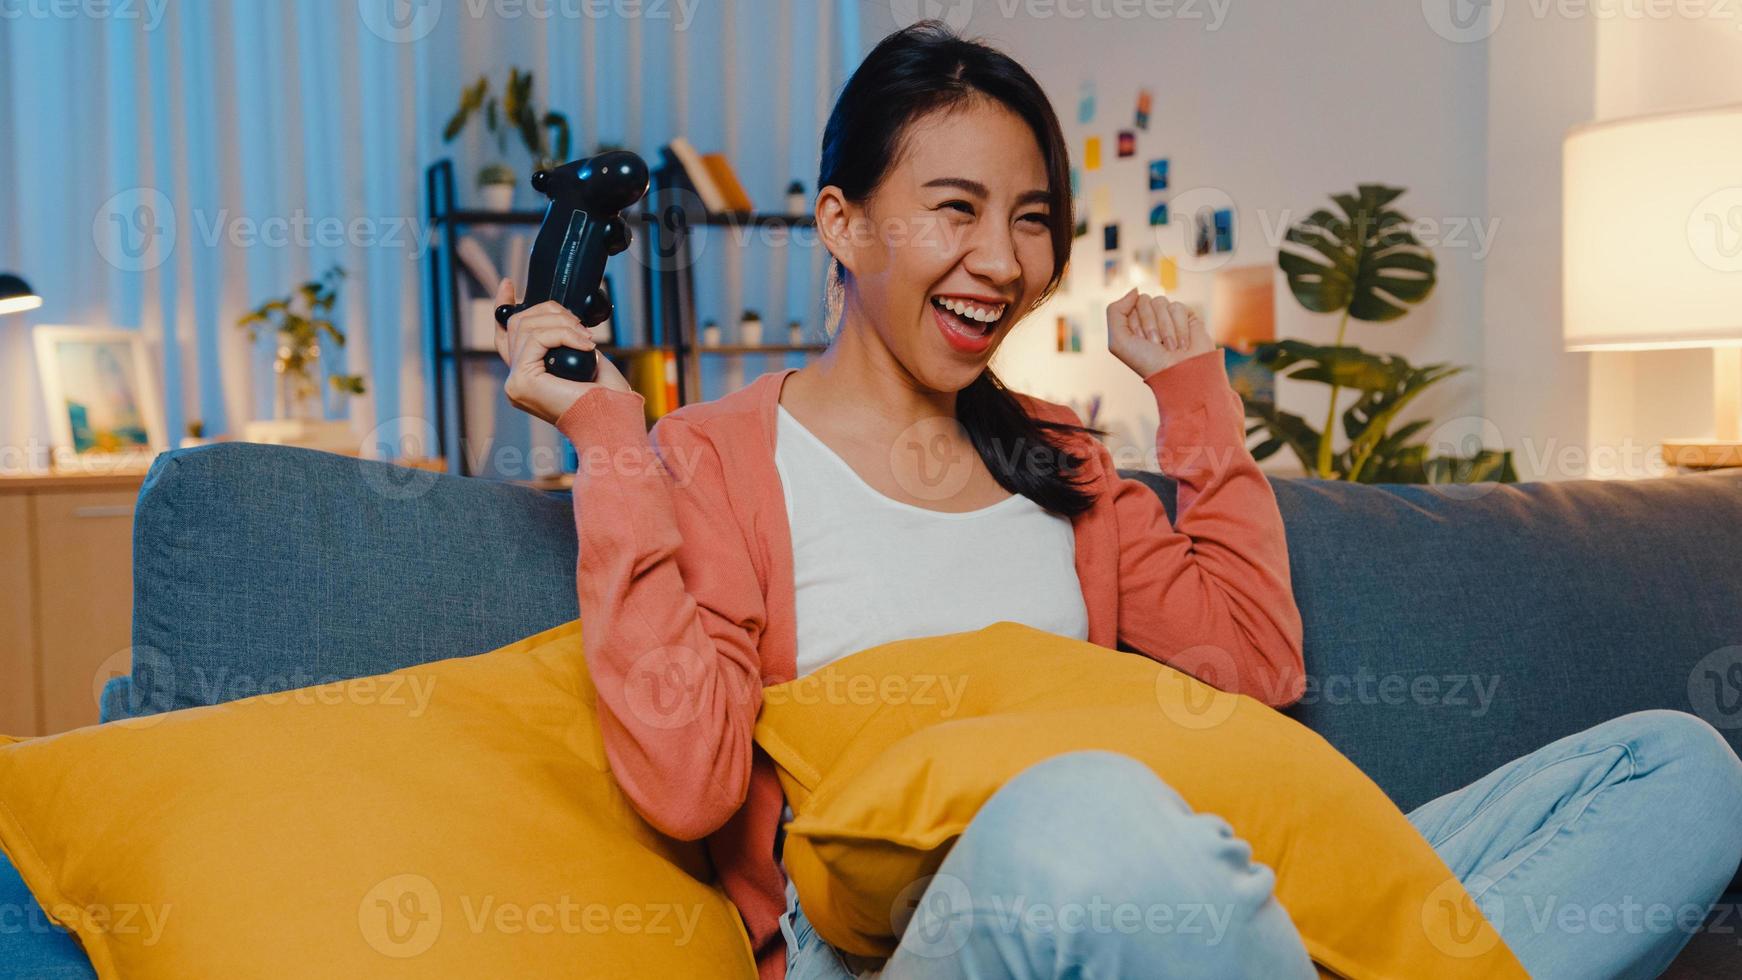 la giovane donna asiatica che utilizza il controller wireless gioca al videogioco con un momento felice e divertente sul divano nel soggiorno di casa la notte. resta a casa, attività di autoquarantena per quarantena covid o coronavirus. foto